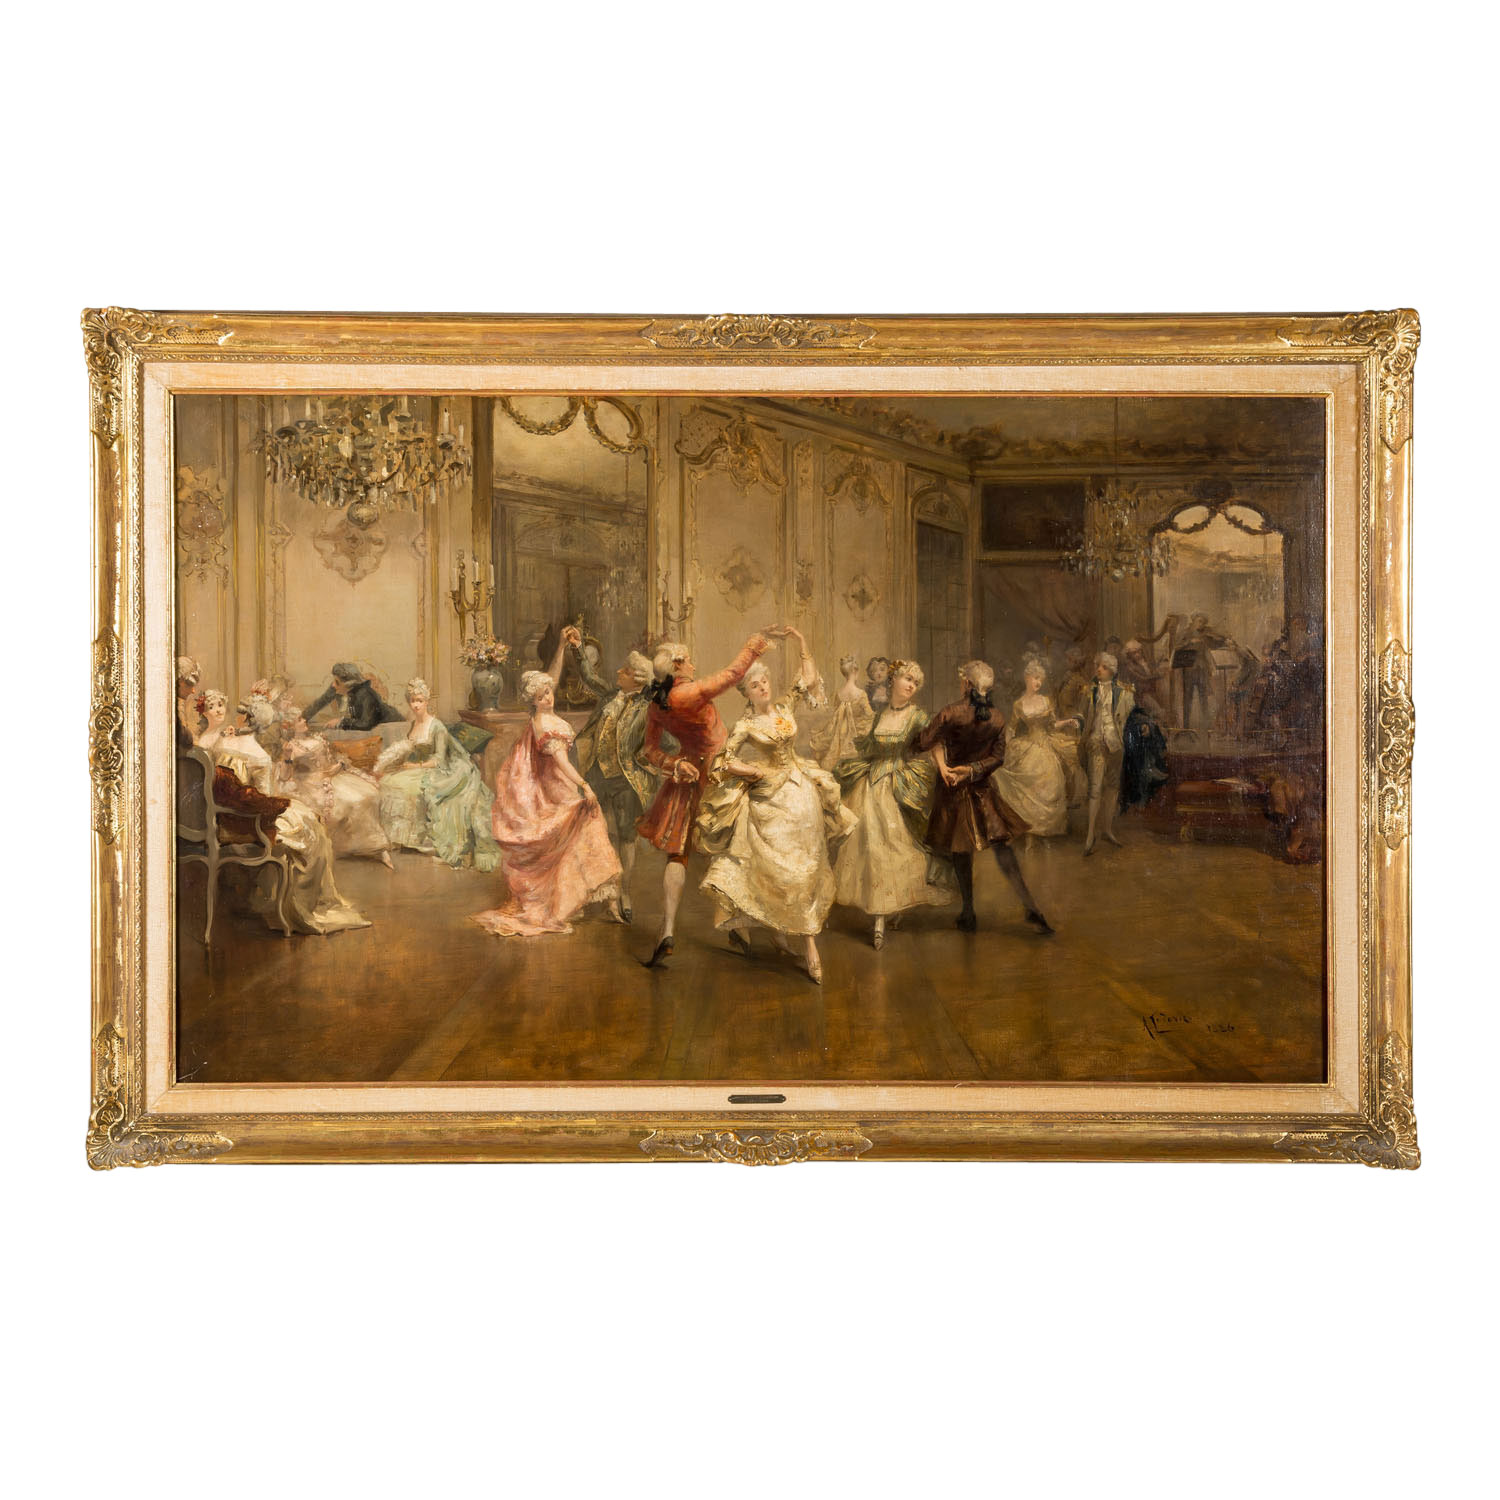 LUDOVICI, ALBERT II (1852-1932) "Im Ballsaal" 1886 - Image 2 of 10